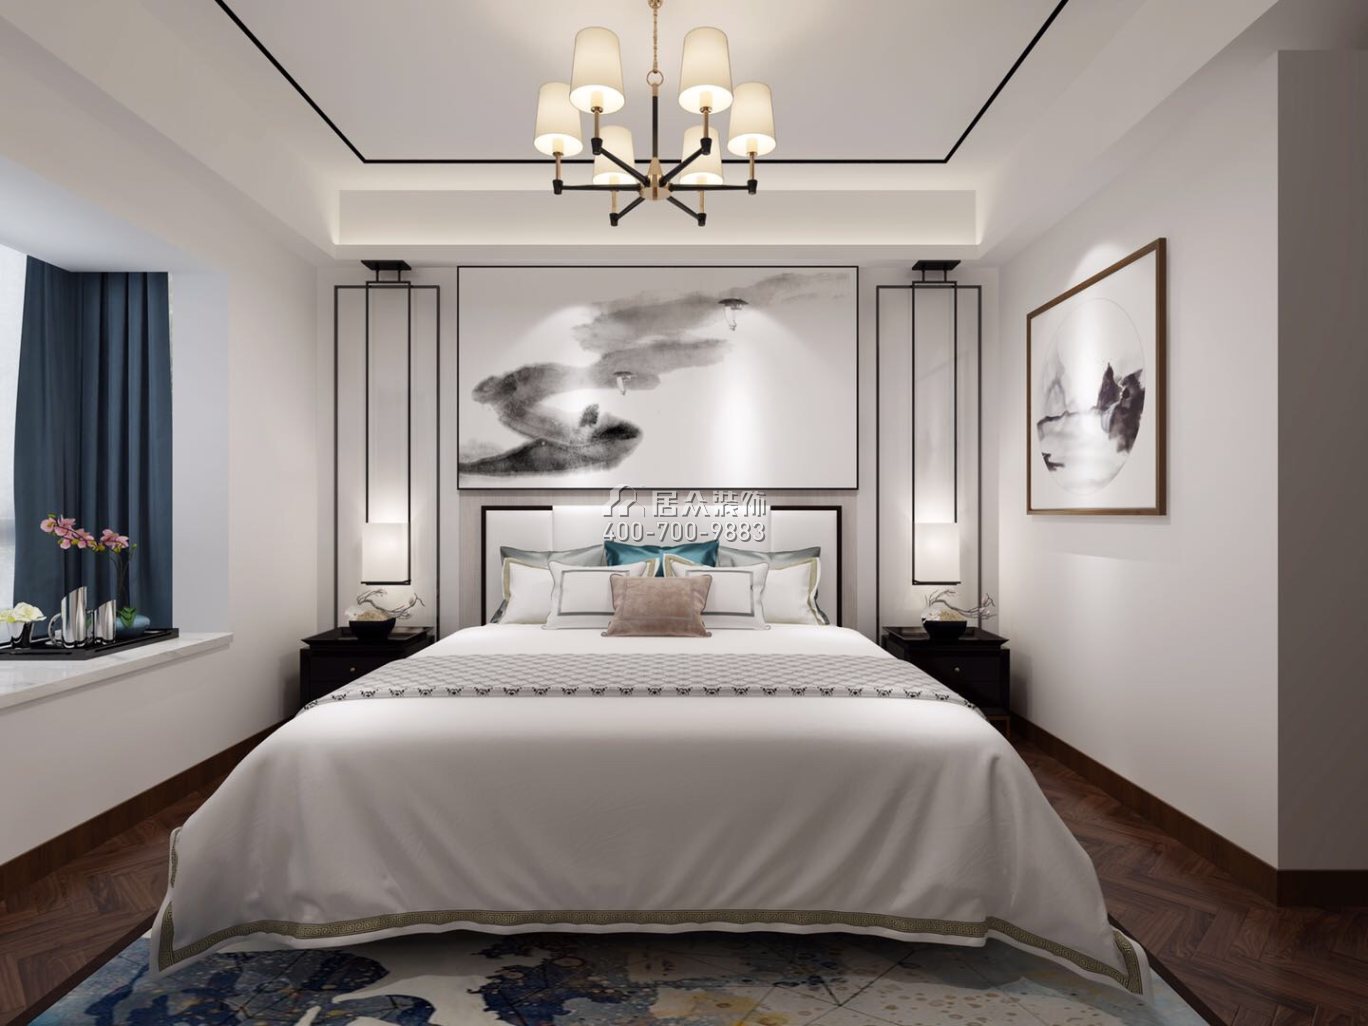 润景园139平方米中式风格平层户型卧室装修效果图